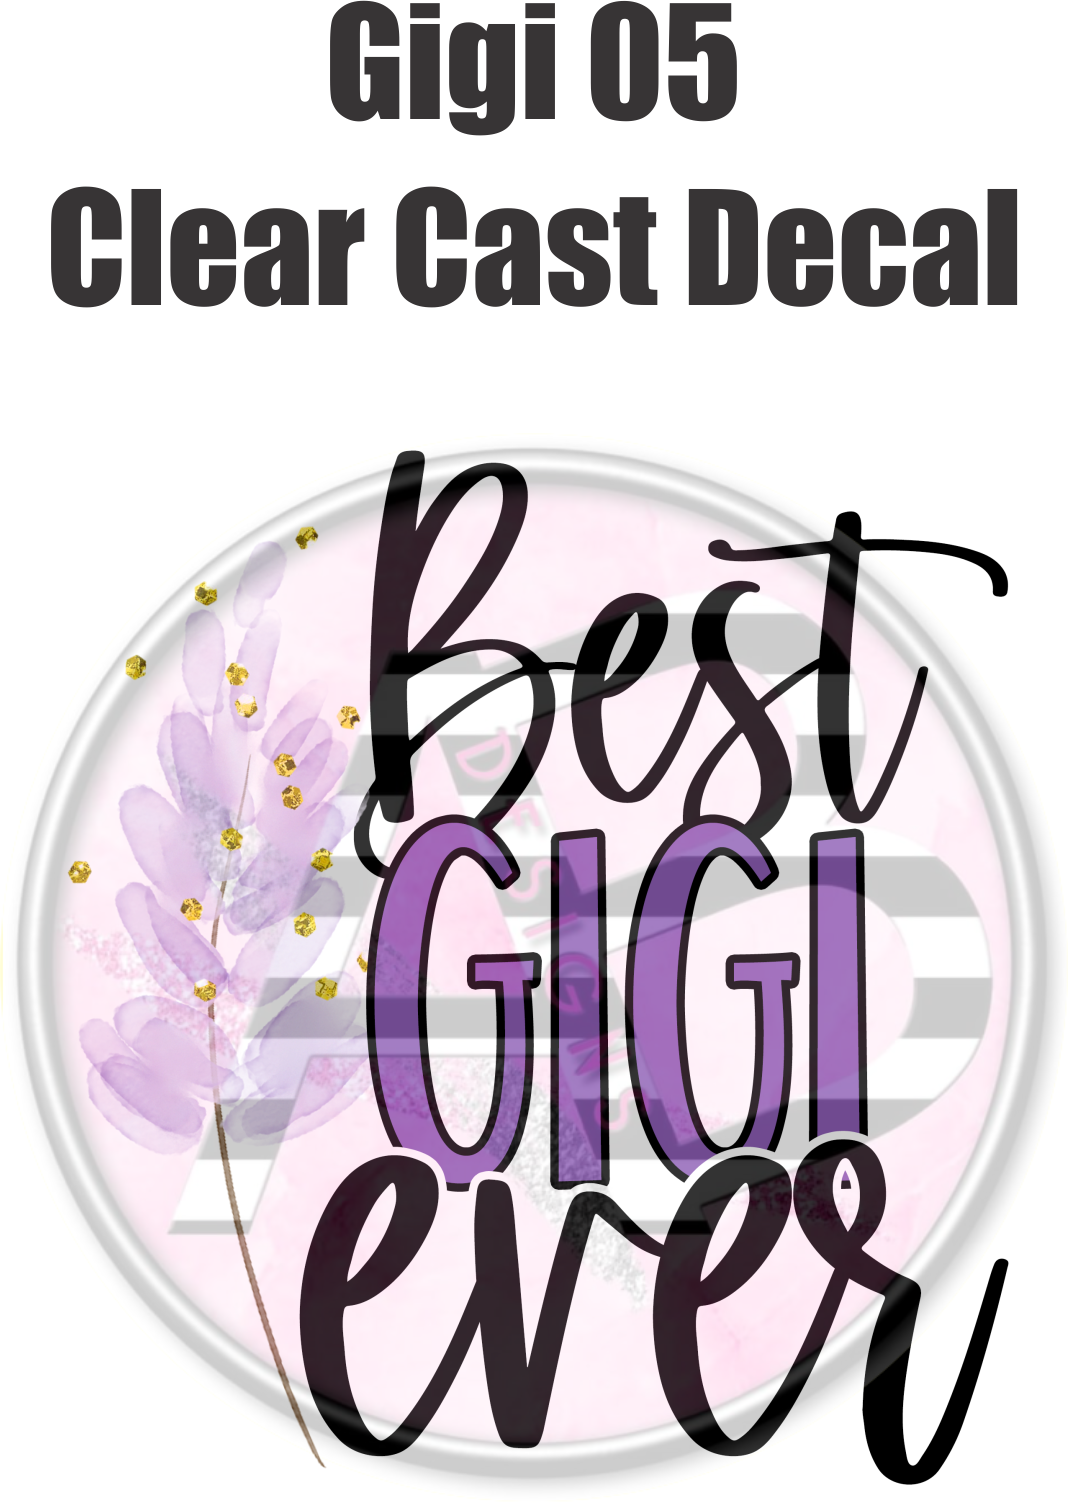 Gigi 05 - Clear Cast Decal - 04